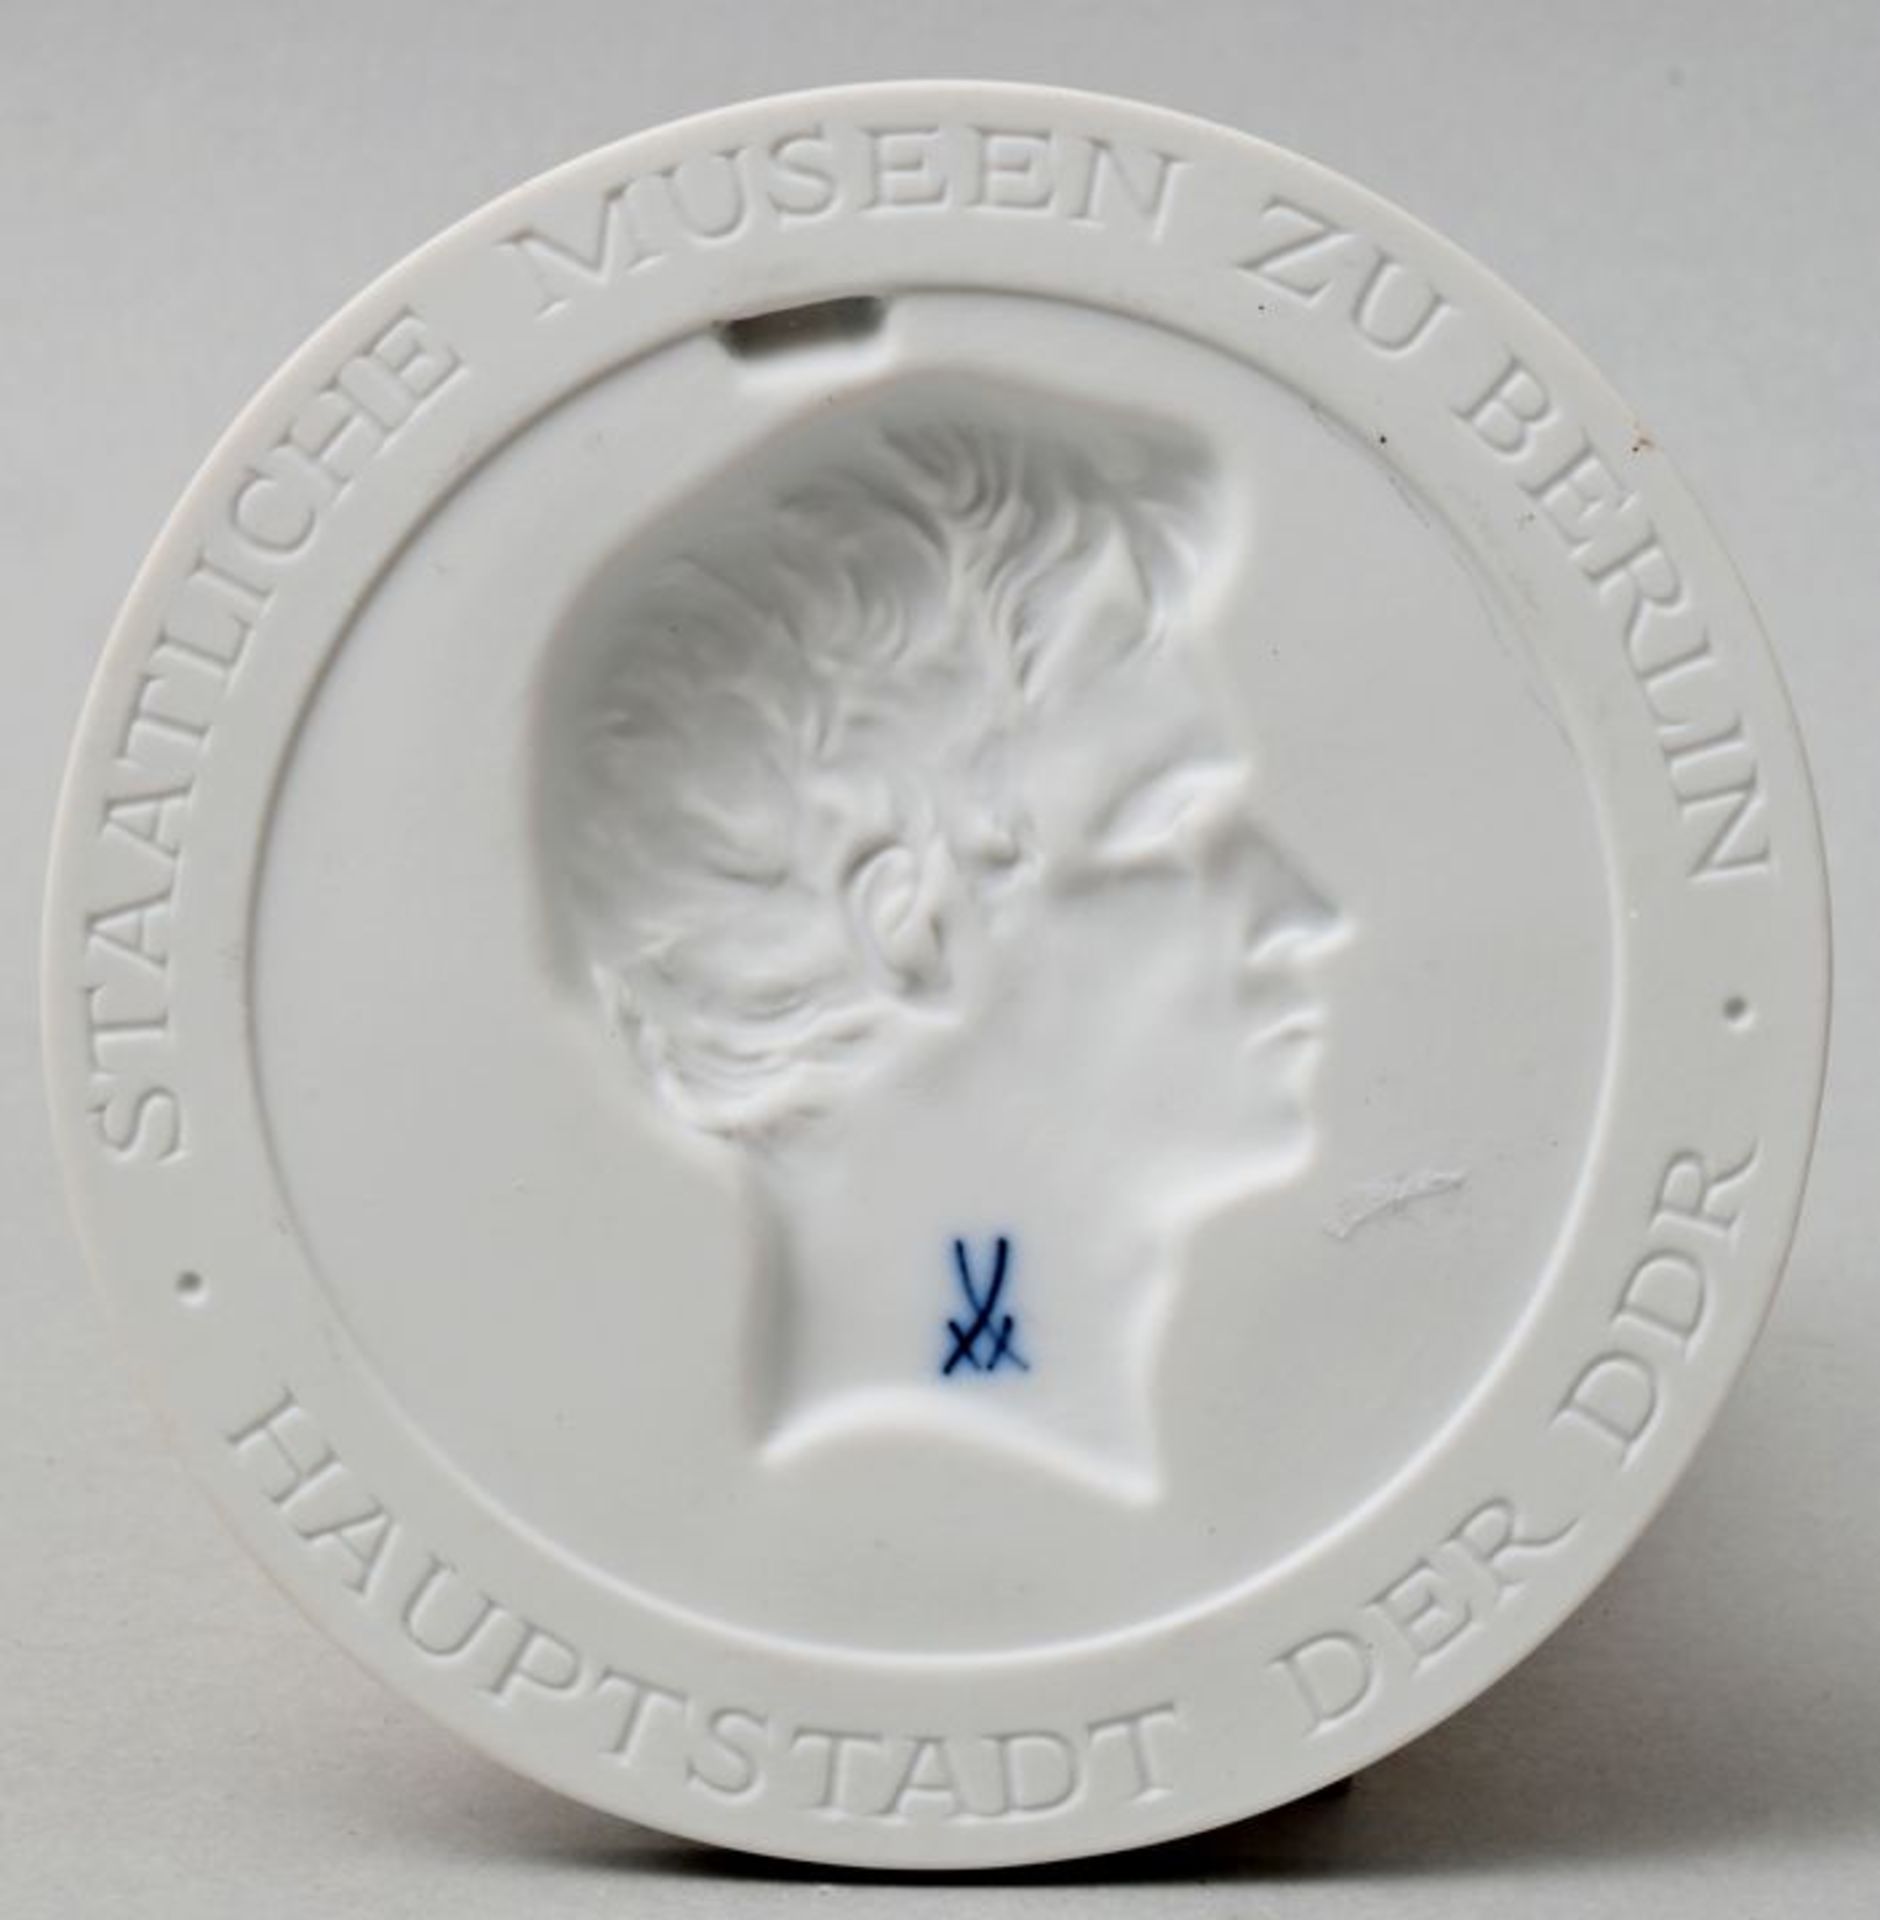 Plakette Meissen/ porcelain plaque Meissen - Image 3 of 3